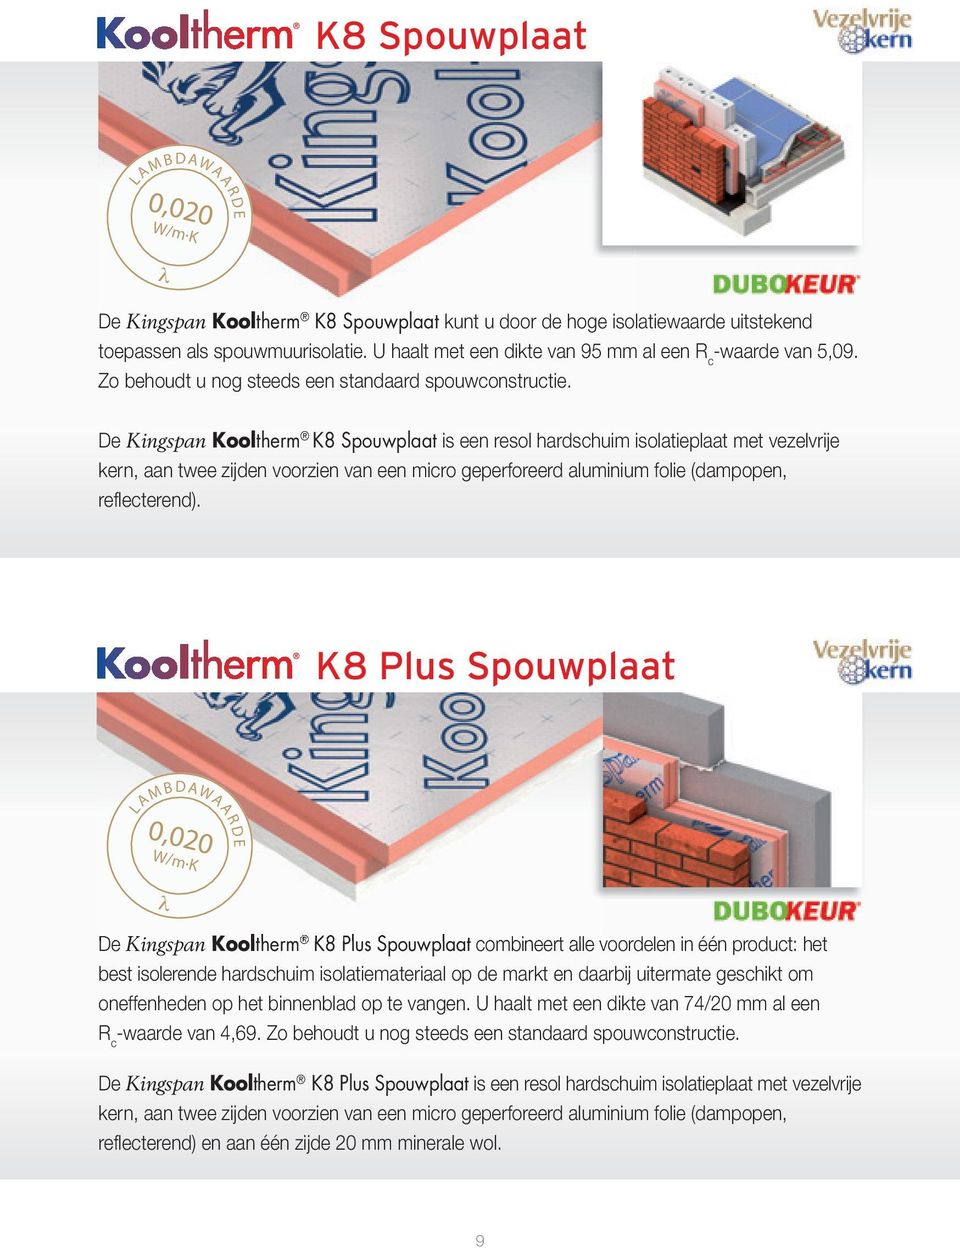 De Kingspan Kooltherm K8 Spouwplaat is een resol hardschuim isolatieplaat met vezelvrije kern, aan twee zijden voorzien van een micro geperforeerd aluminium folie (dampopen, reflecterend).